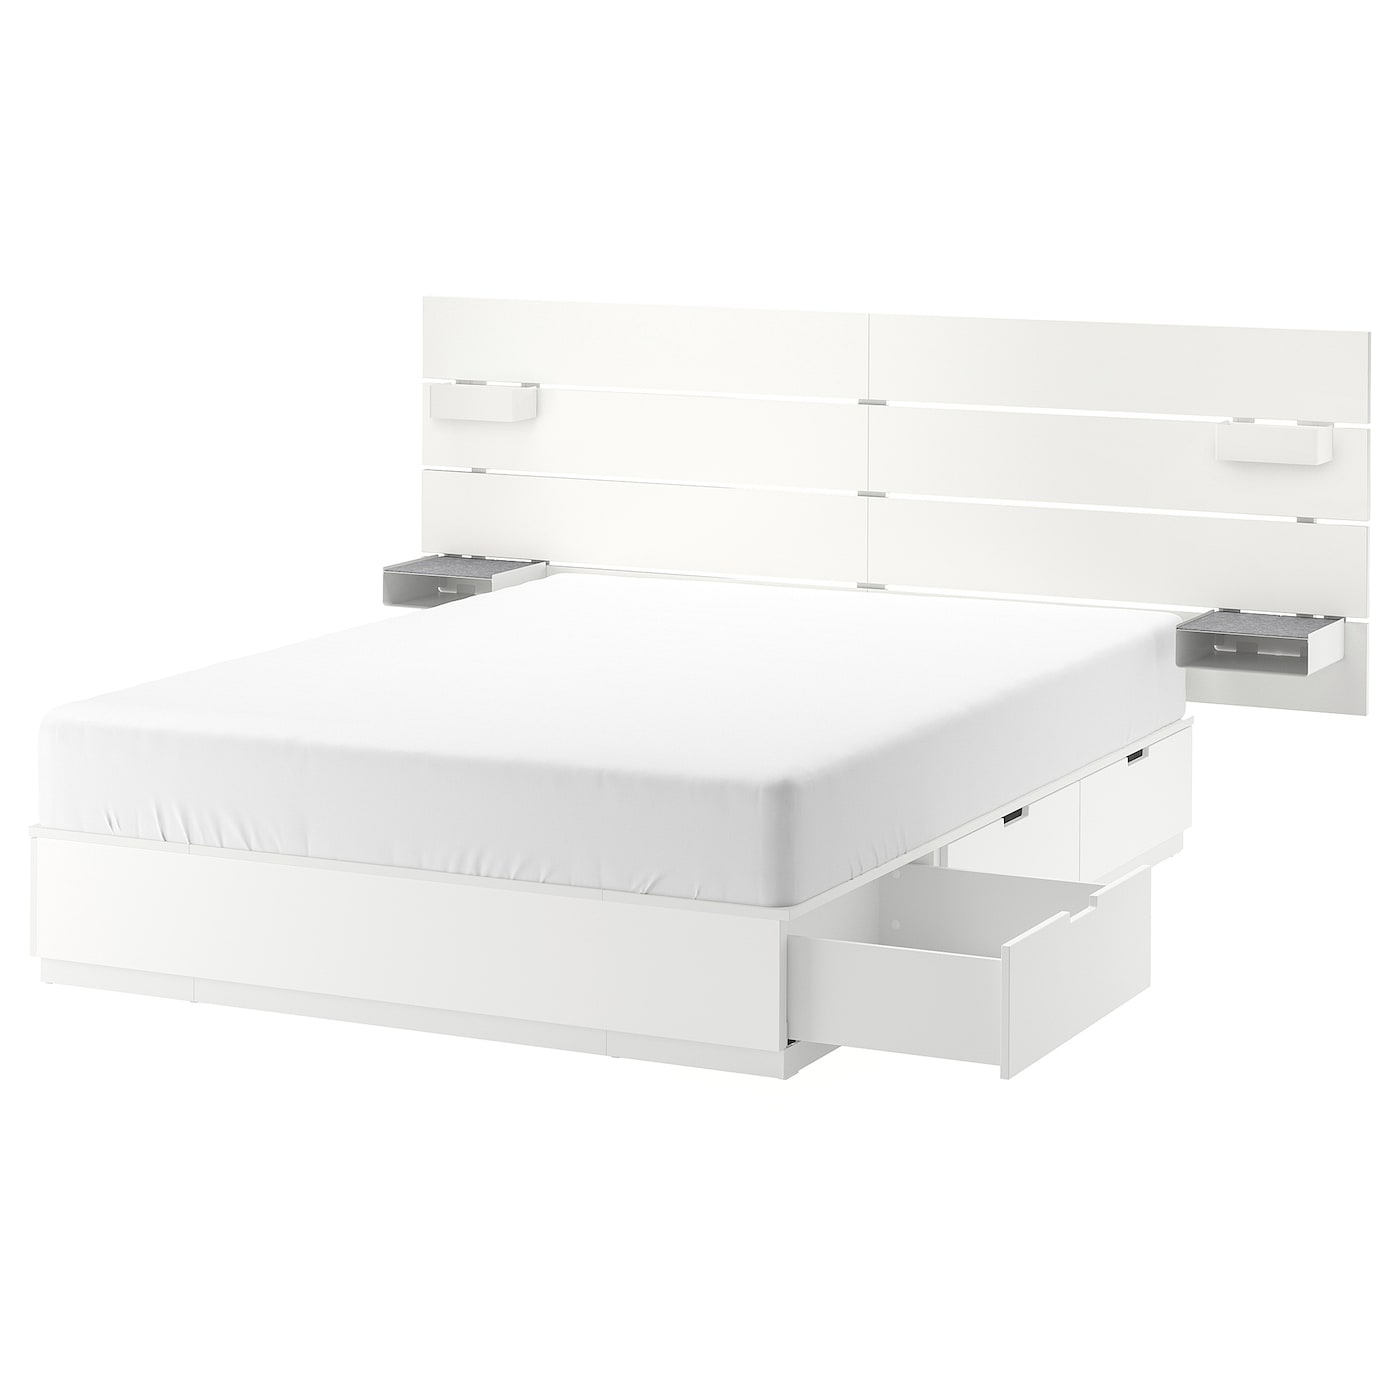 Комплект изголовья двуспальной кровати - NORDLI IKEA/ НОРДЛИ ИКЕА, 160x200 см, белый